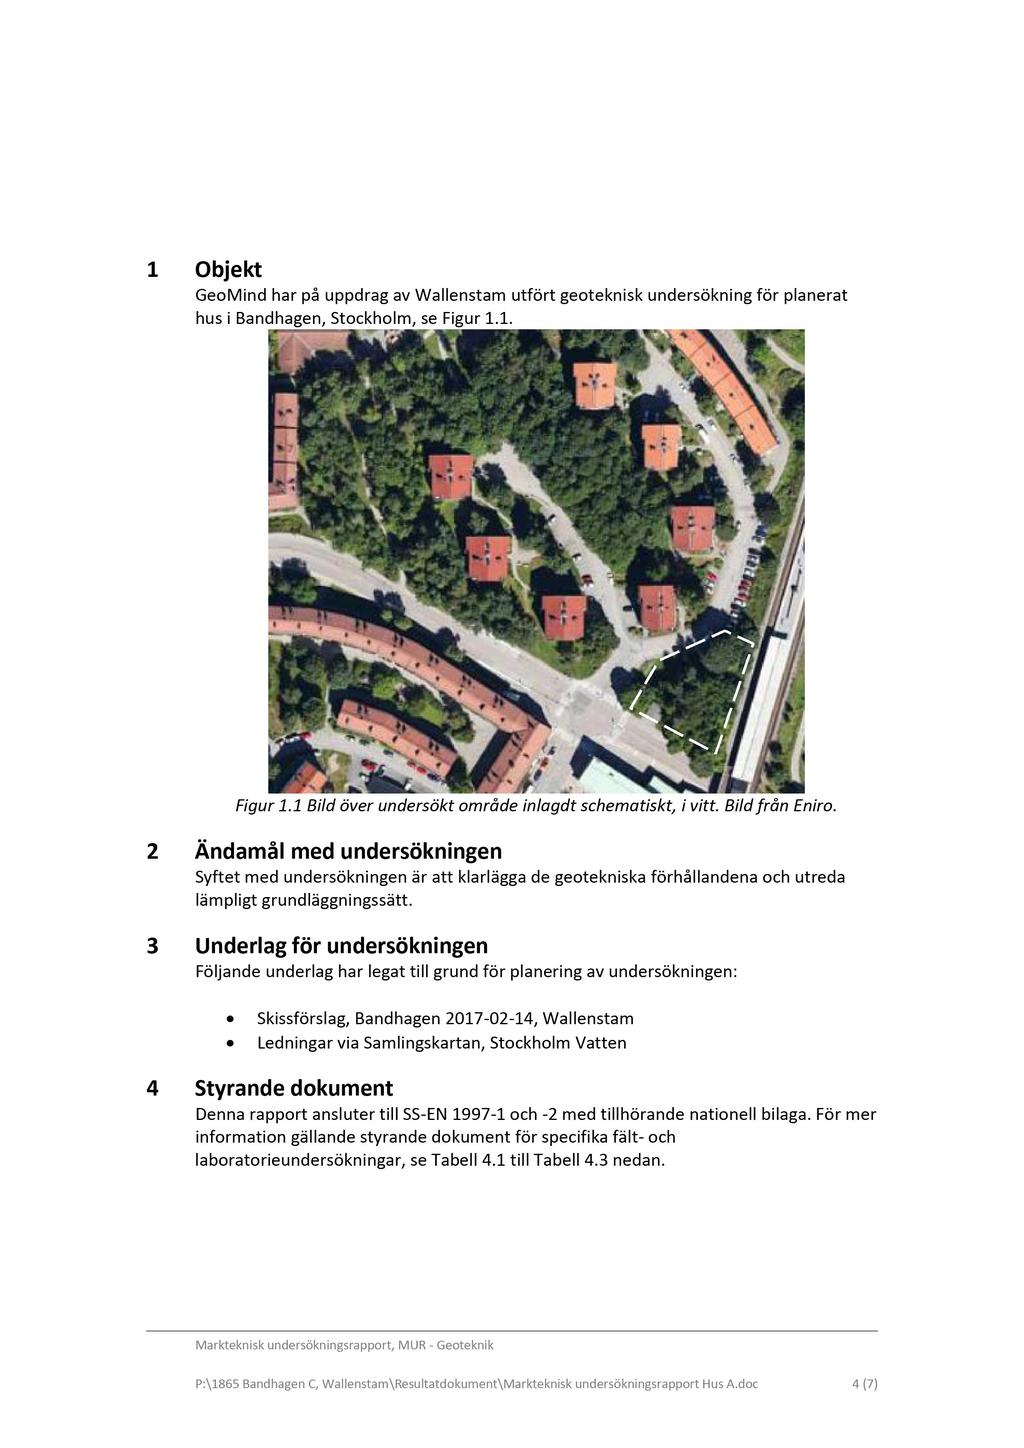 1 Objekt GeoMind har på uppdrag av Wallenstam utfört geoteknisk undersökning för planera t hus i Bandhagen, Stockholm, se Figur 1.1. Figur 1.1 Bild över undersökt område inlag d t schematiskt, i vitt.